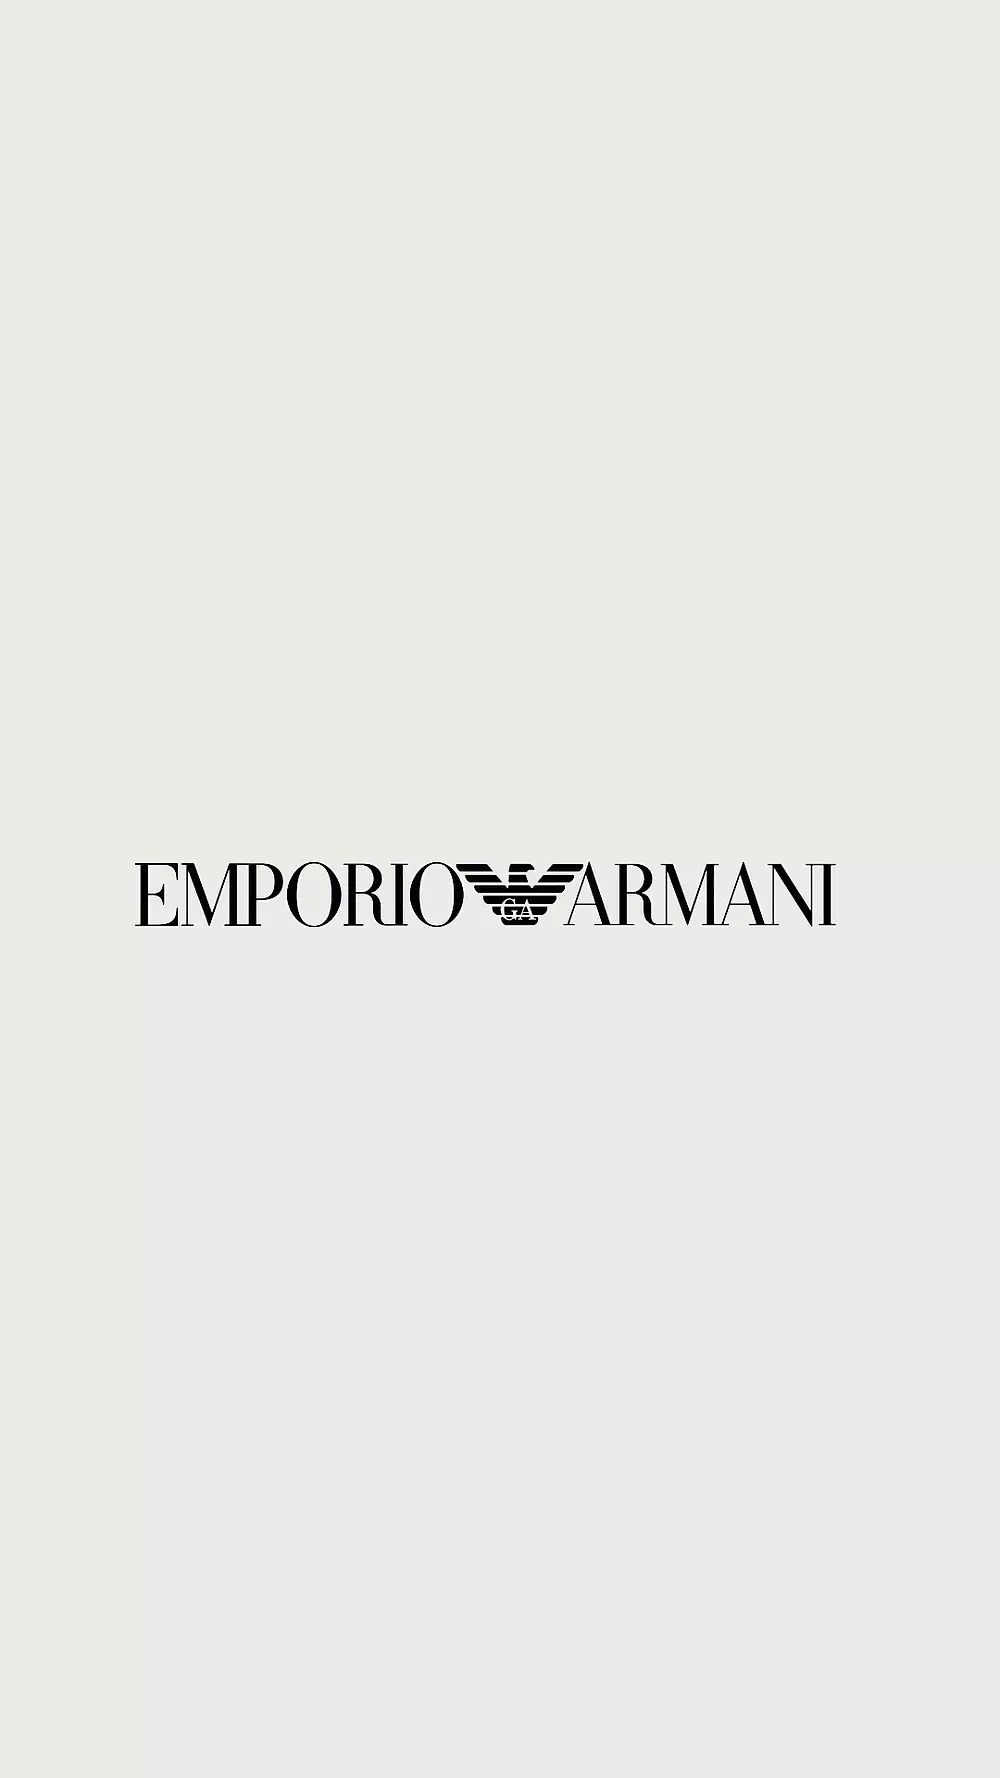 Customized Emporio accessories unique a Armani for - style